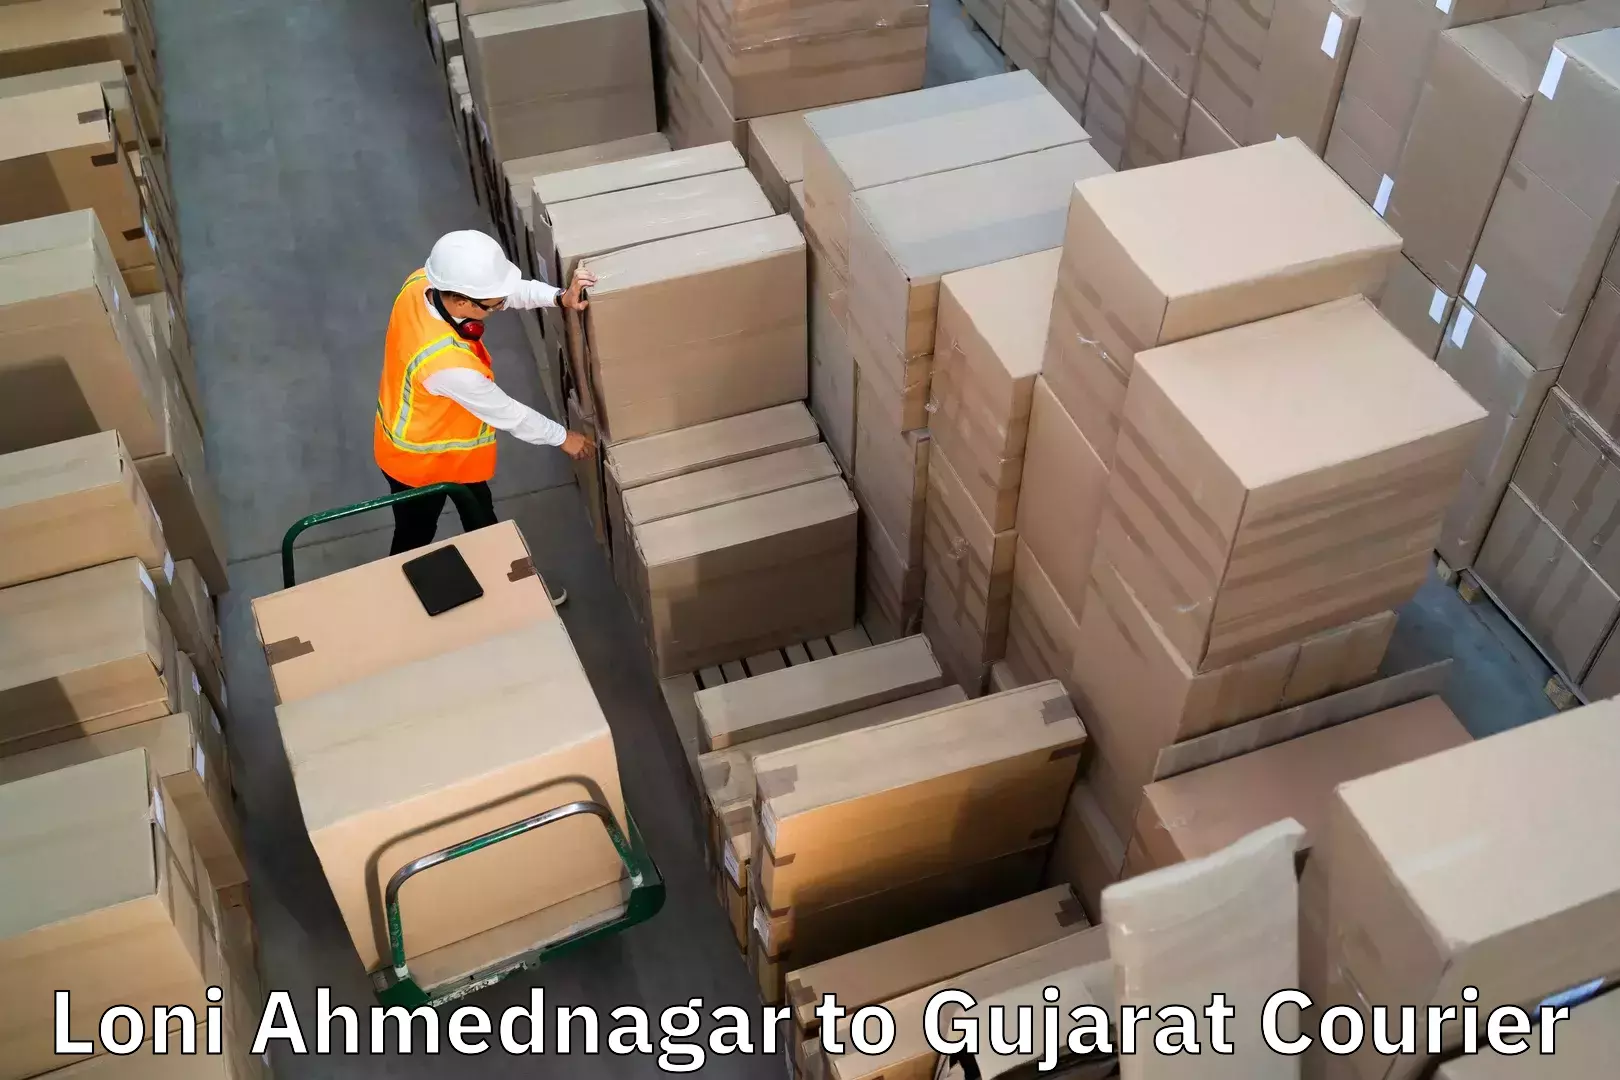 Luggage dispatch service Loni Ahmednagar to Rapar